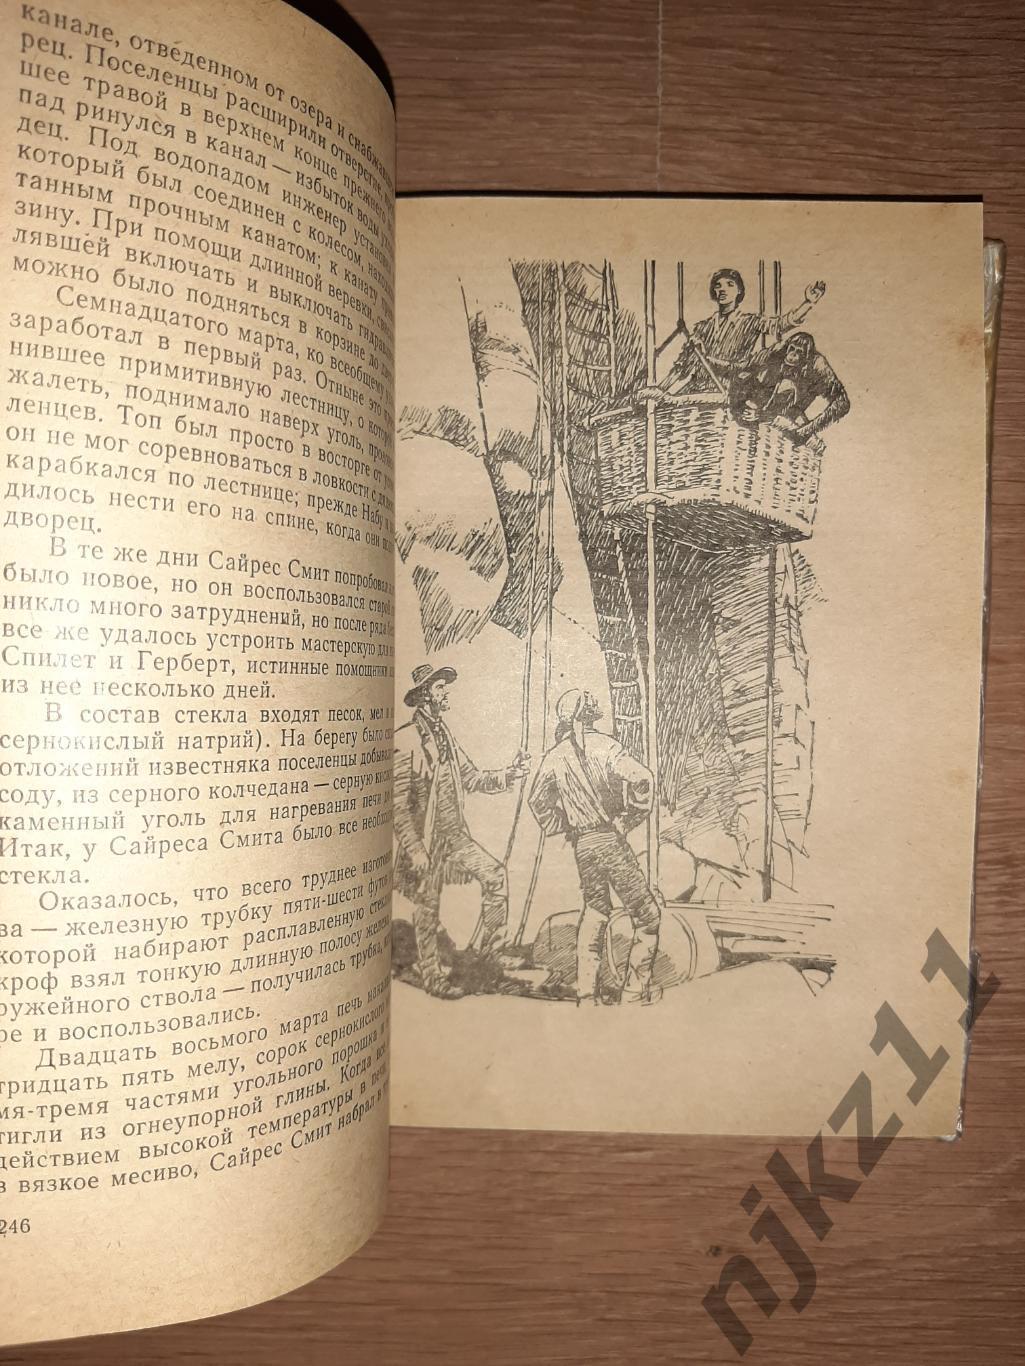 Верн, Жюль Таинственный остров 1982г волго-вятское кн.изд 4